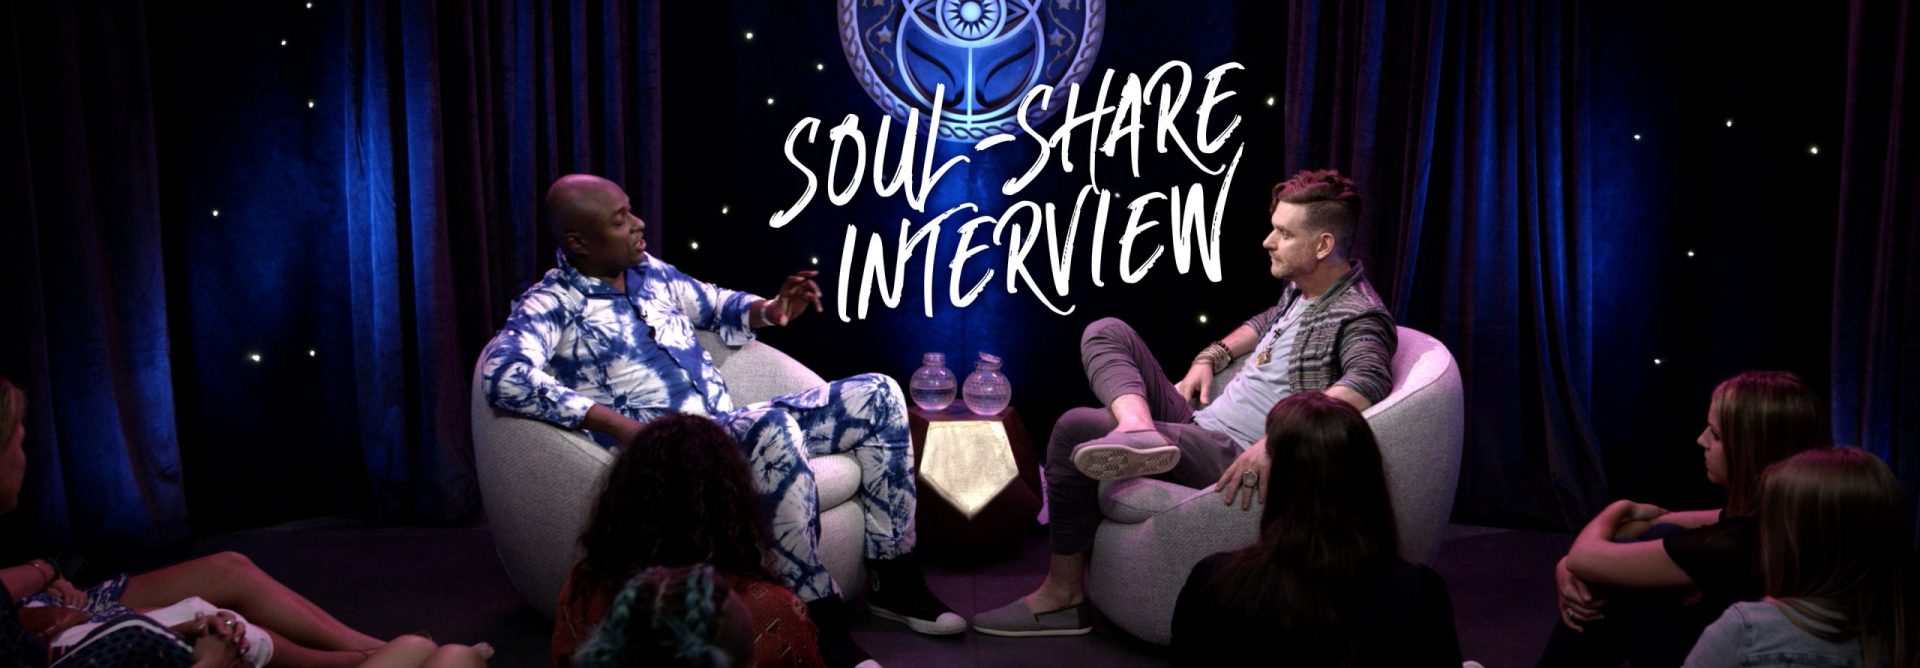 Durek-Soul-Share-Interview-S01-E01